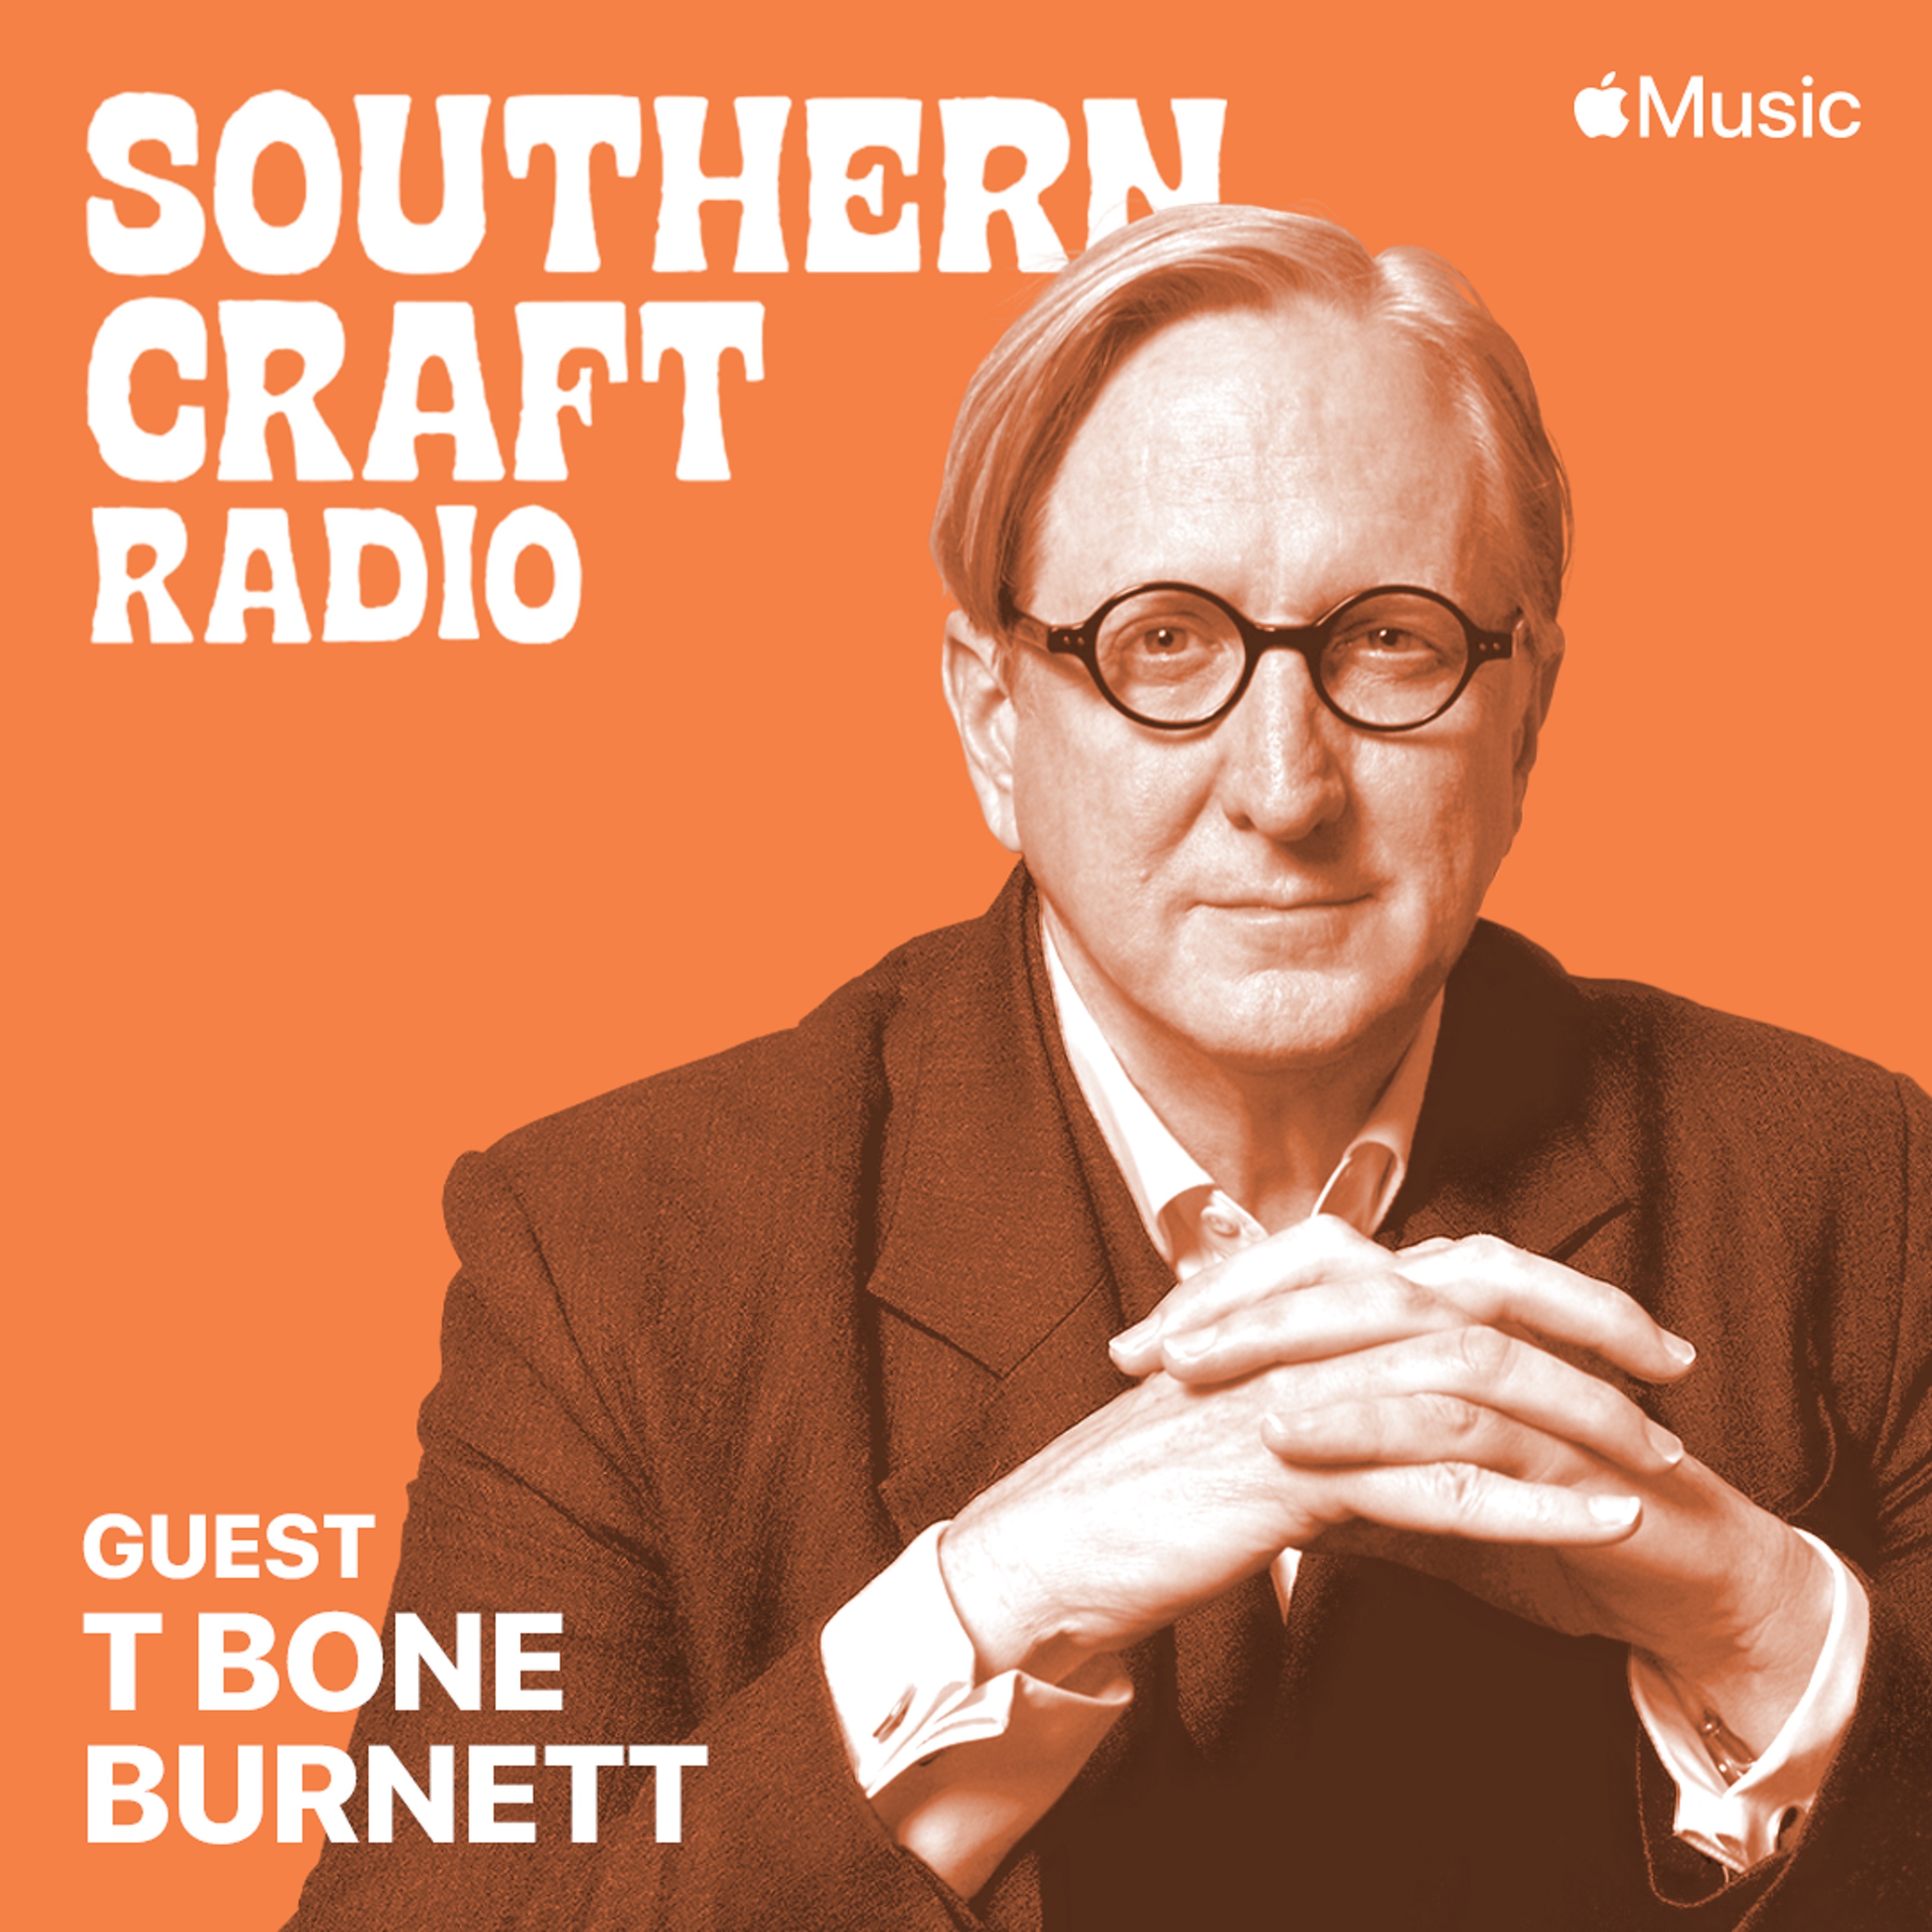 T Bone Burnett Explains His Musical Influences